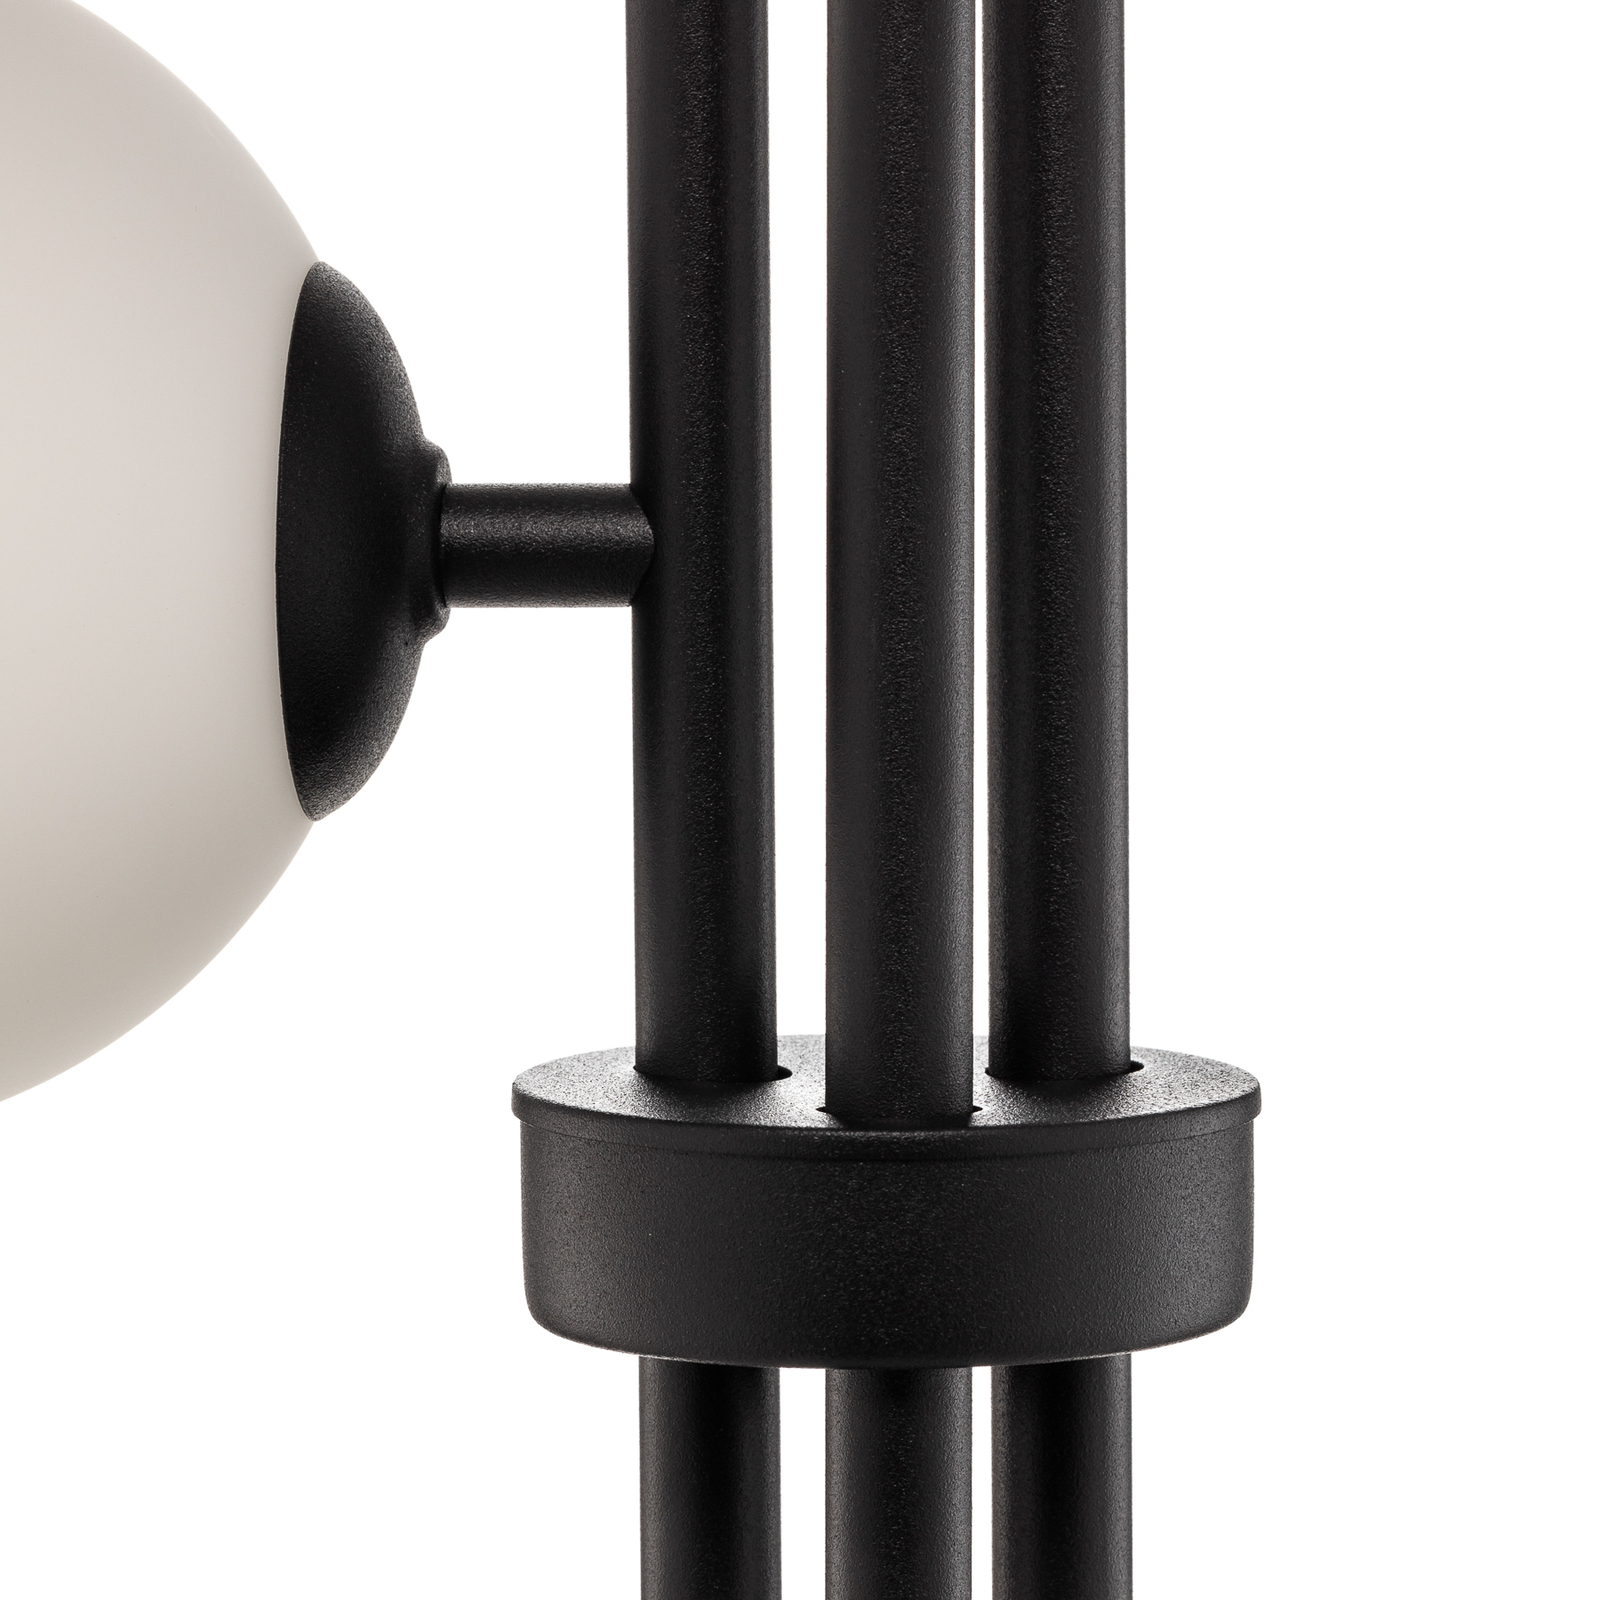 Vloerlamp 1073A1, 3-lamp, zwart